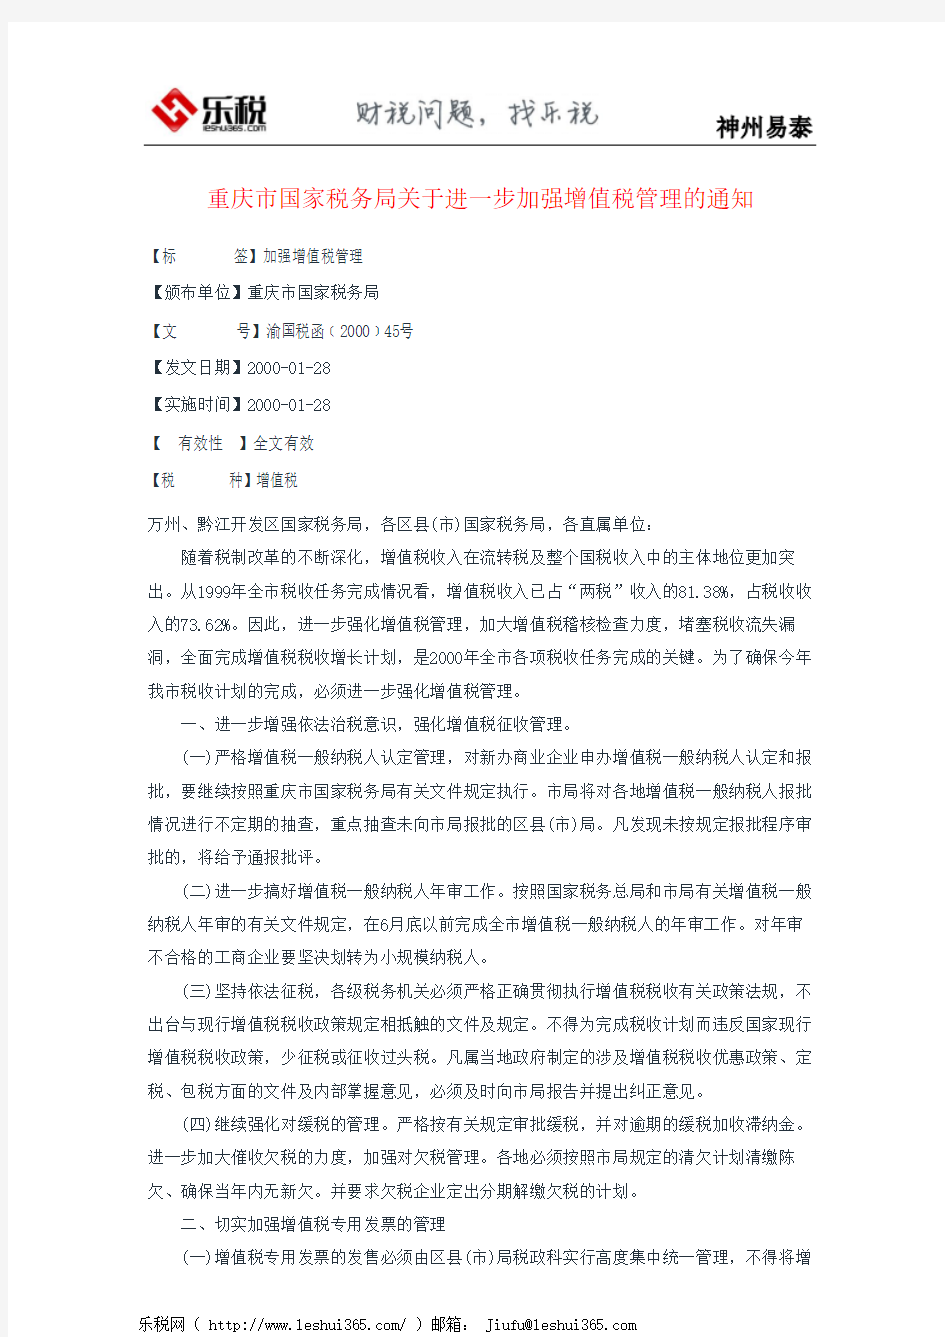 重庆市国家税务局关于进一步加强增值税管理的通知